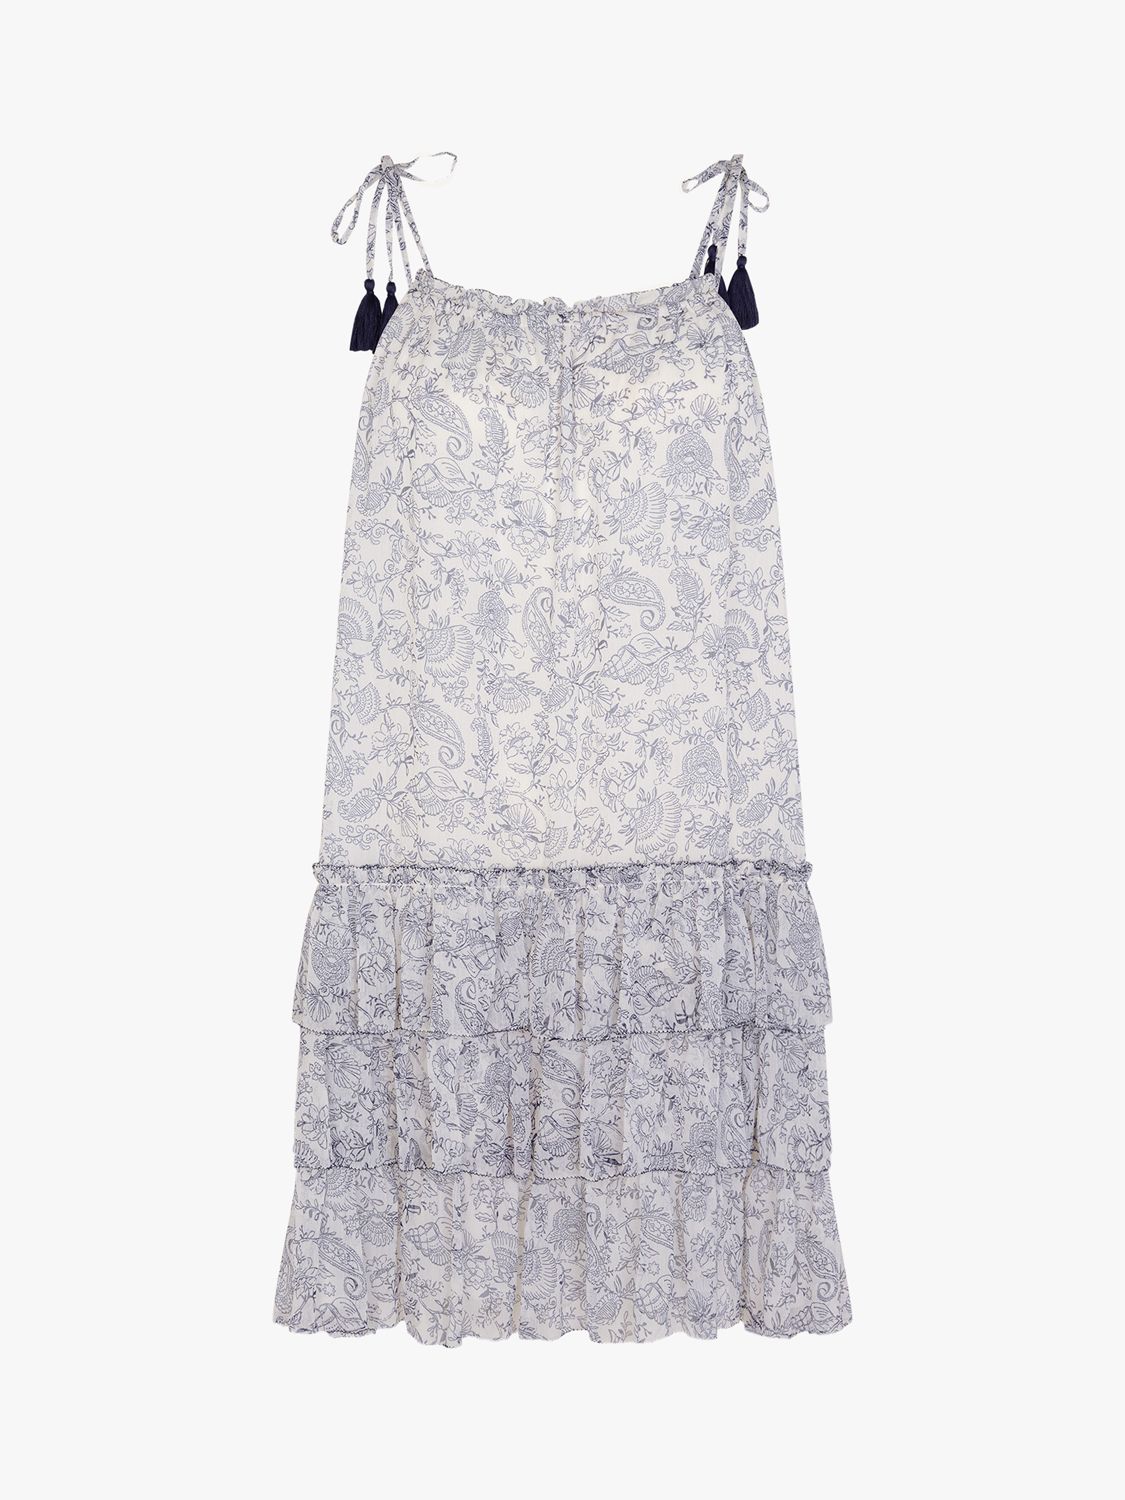 Accessorize Strappy Tiered Mini Dress, White/Multi, XS